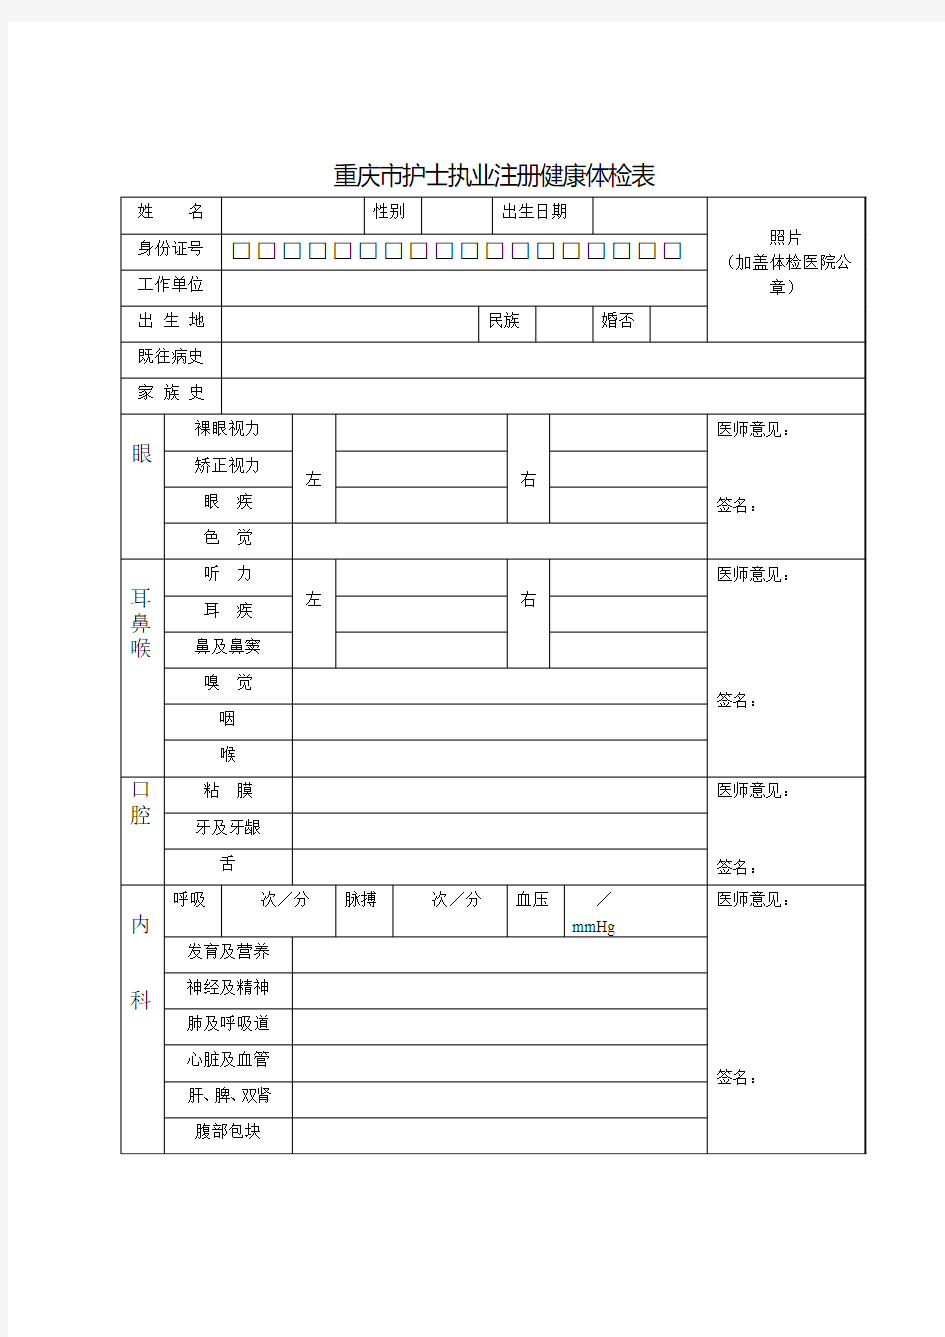 重庆市护士执业注册健康体检表2011年11月版